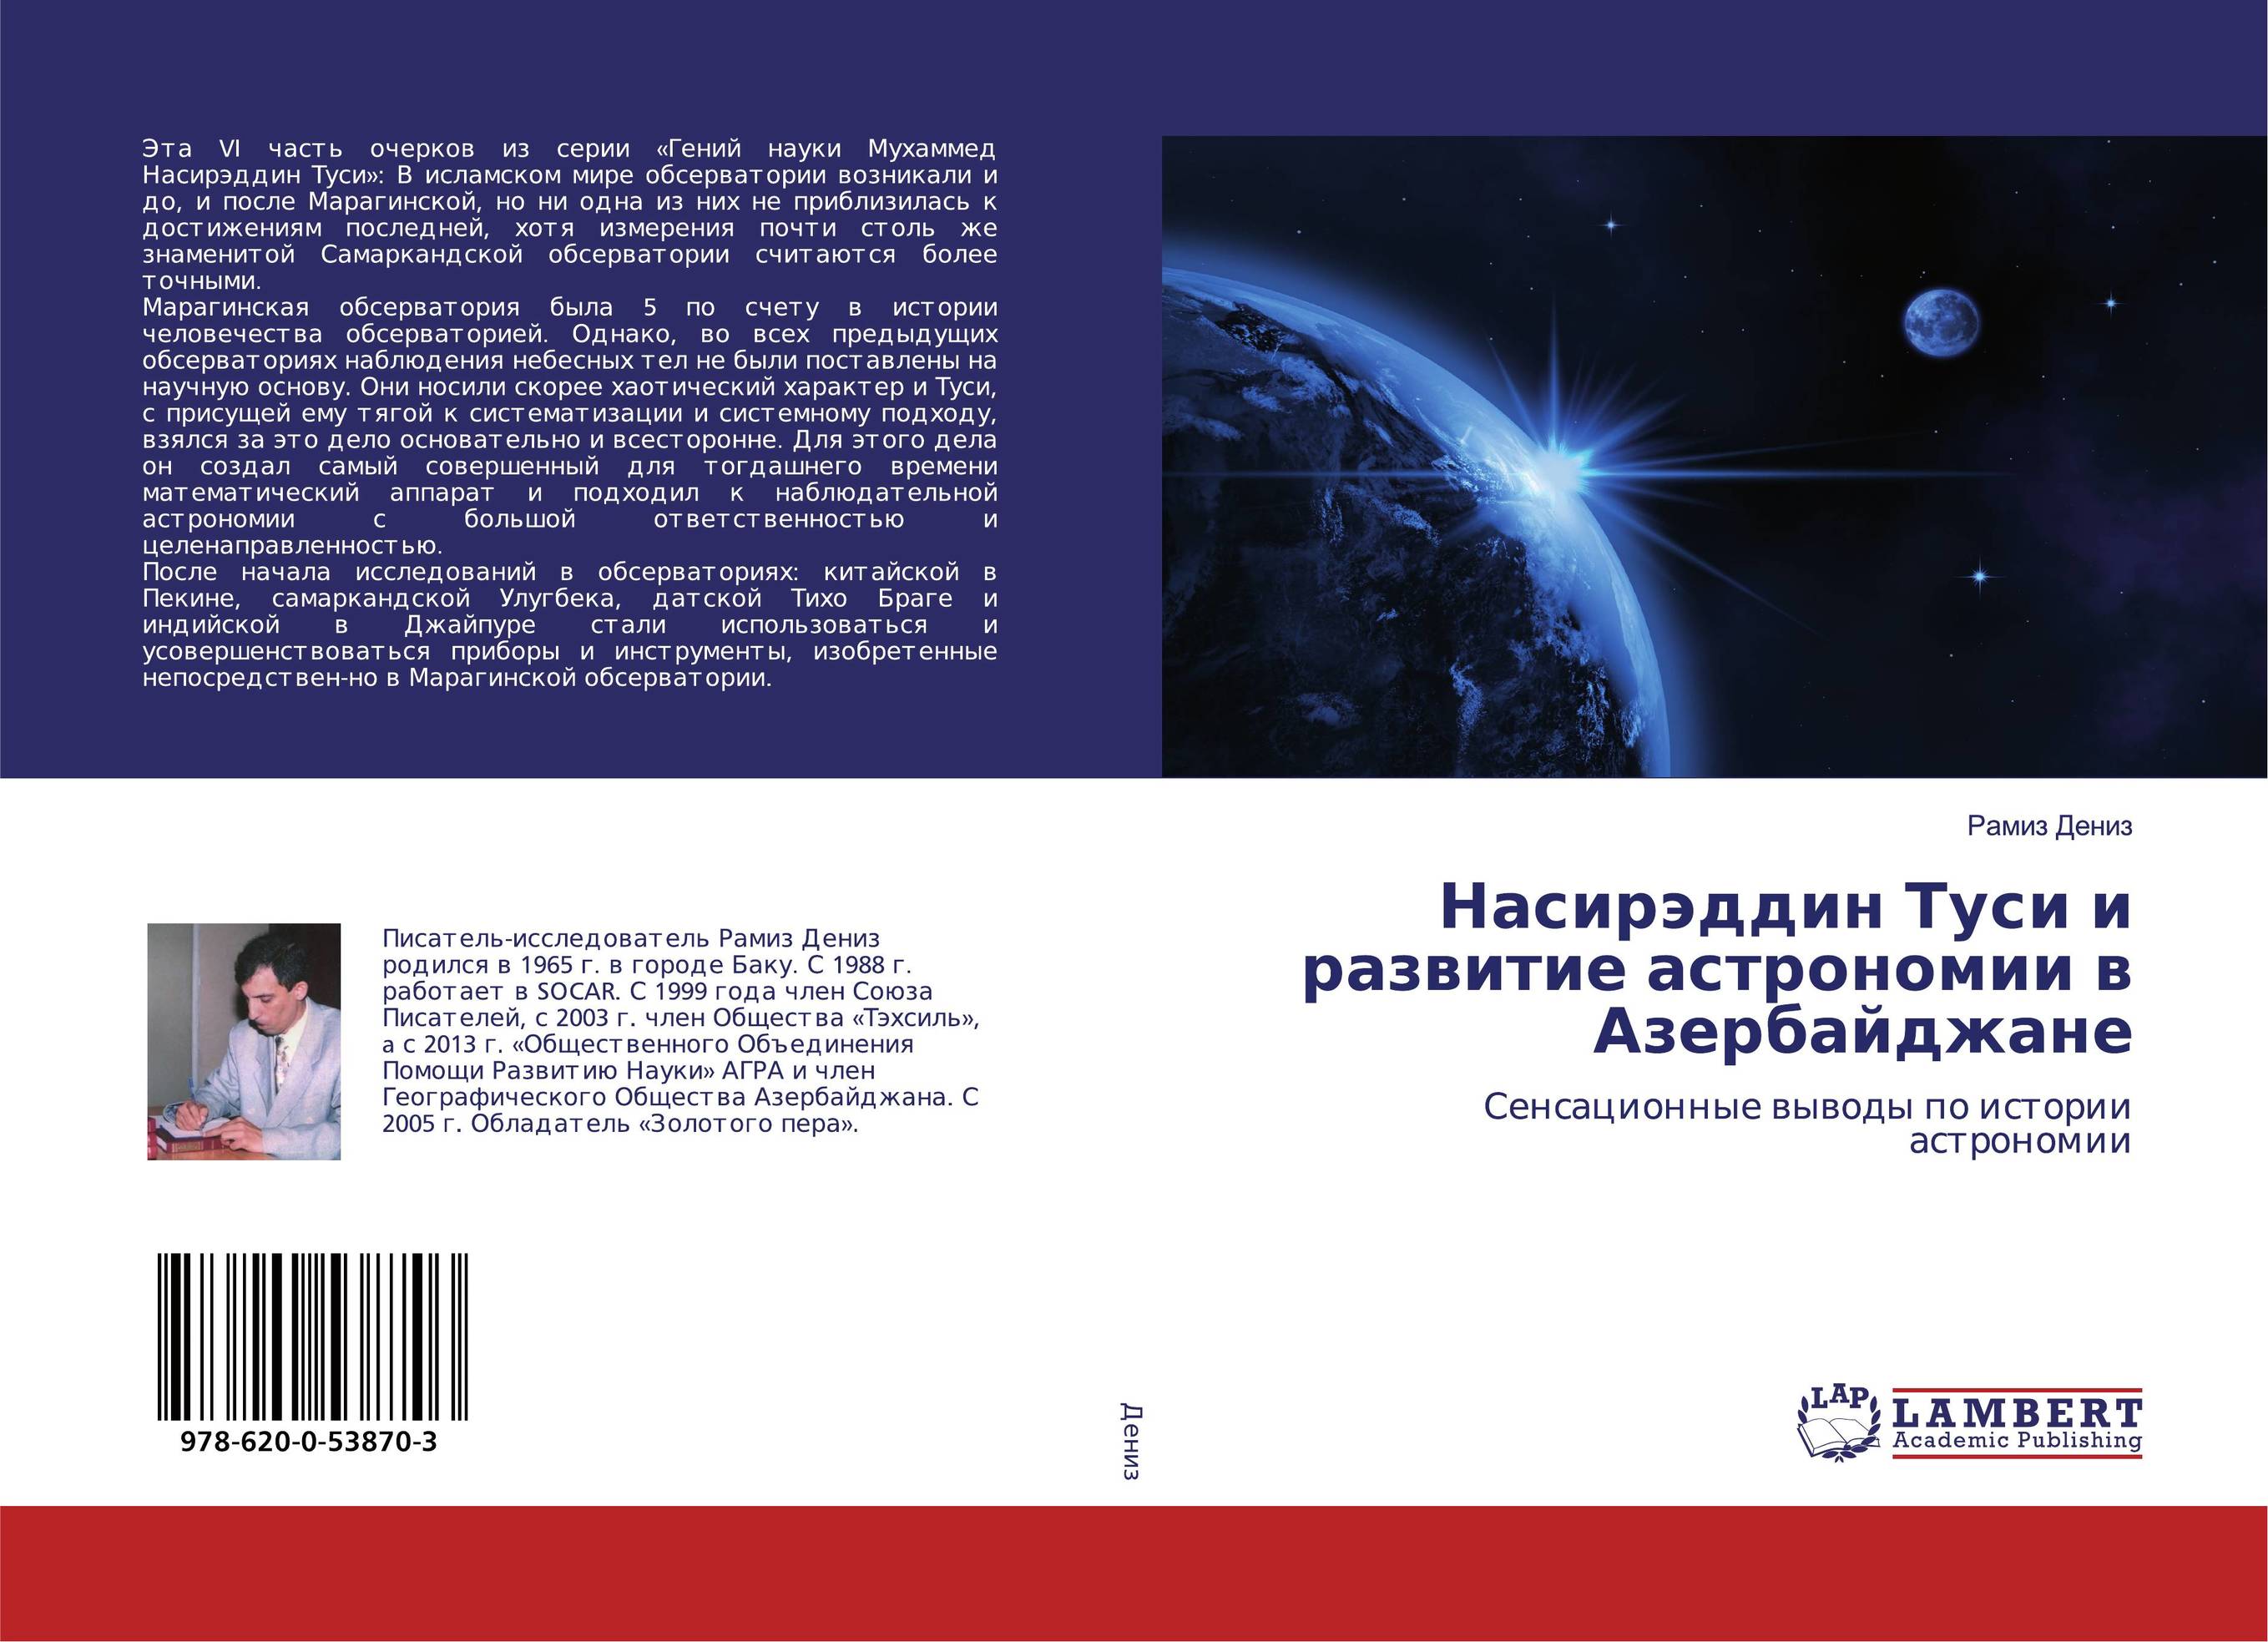 Насирэддин Туси и развитие астрономии в Азербайджане. Сенсационные выводы по истории астрономии.